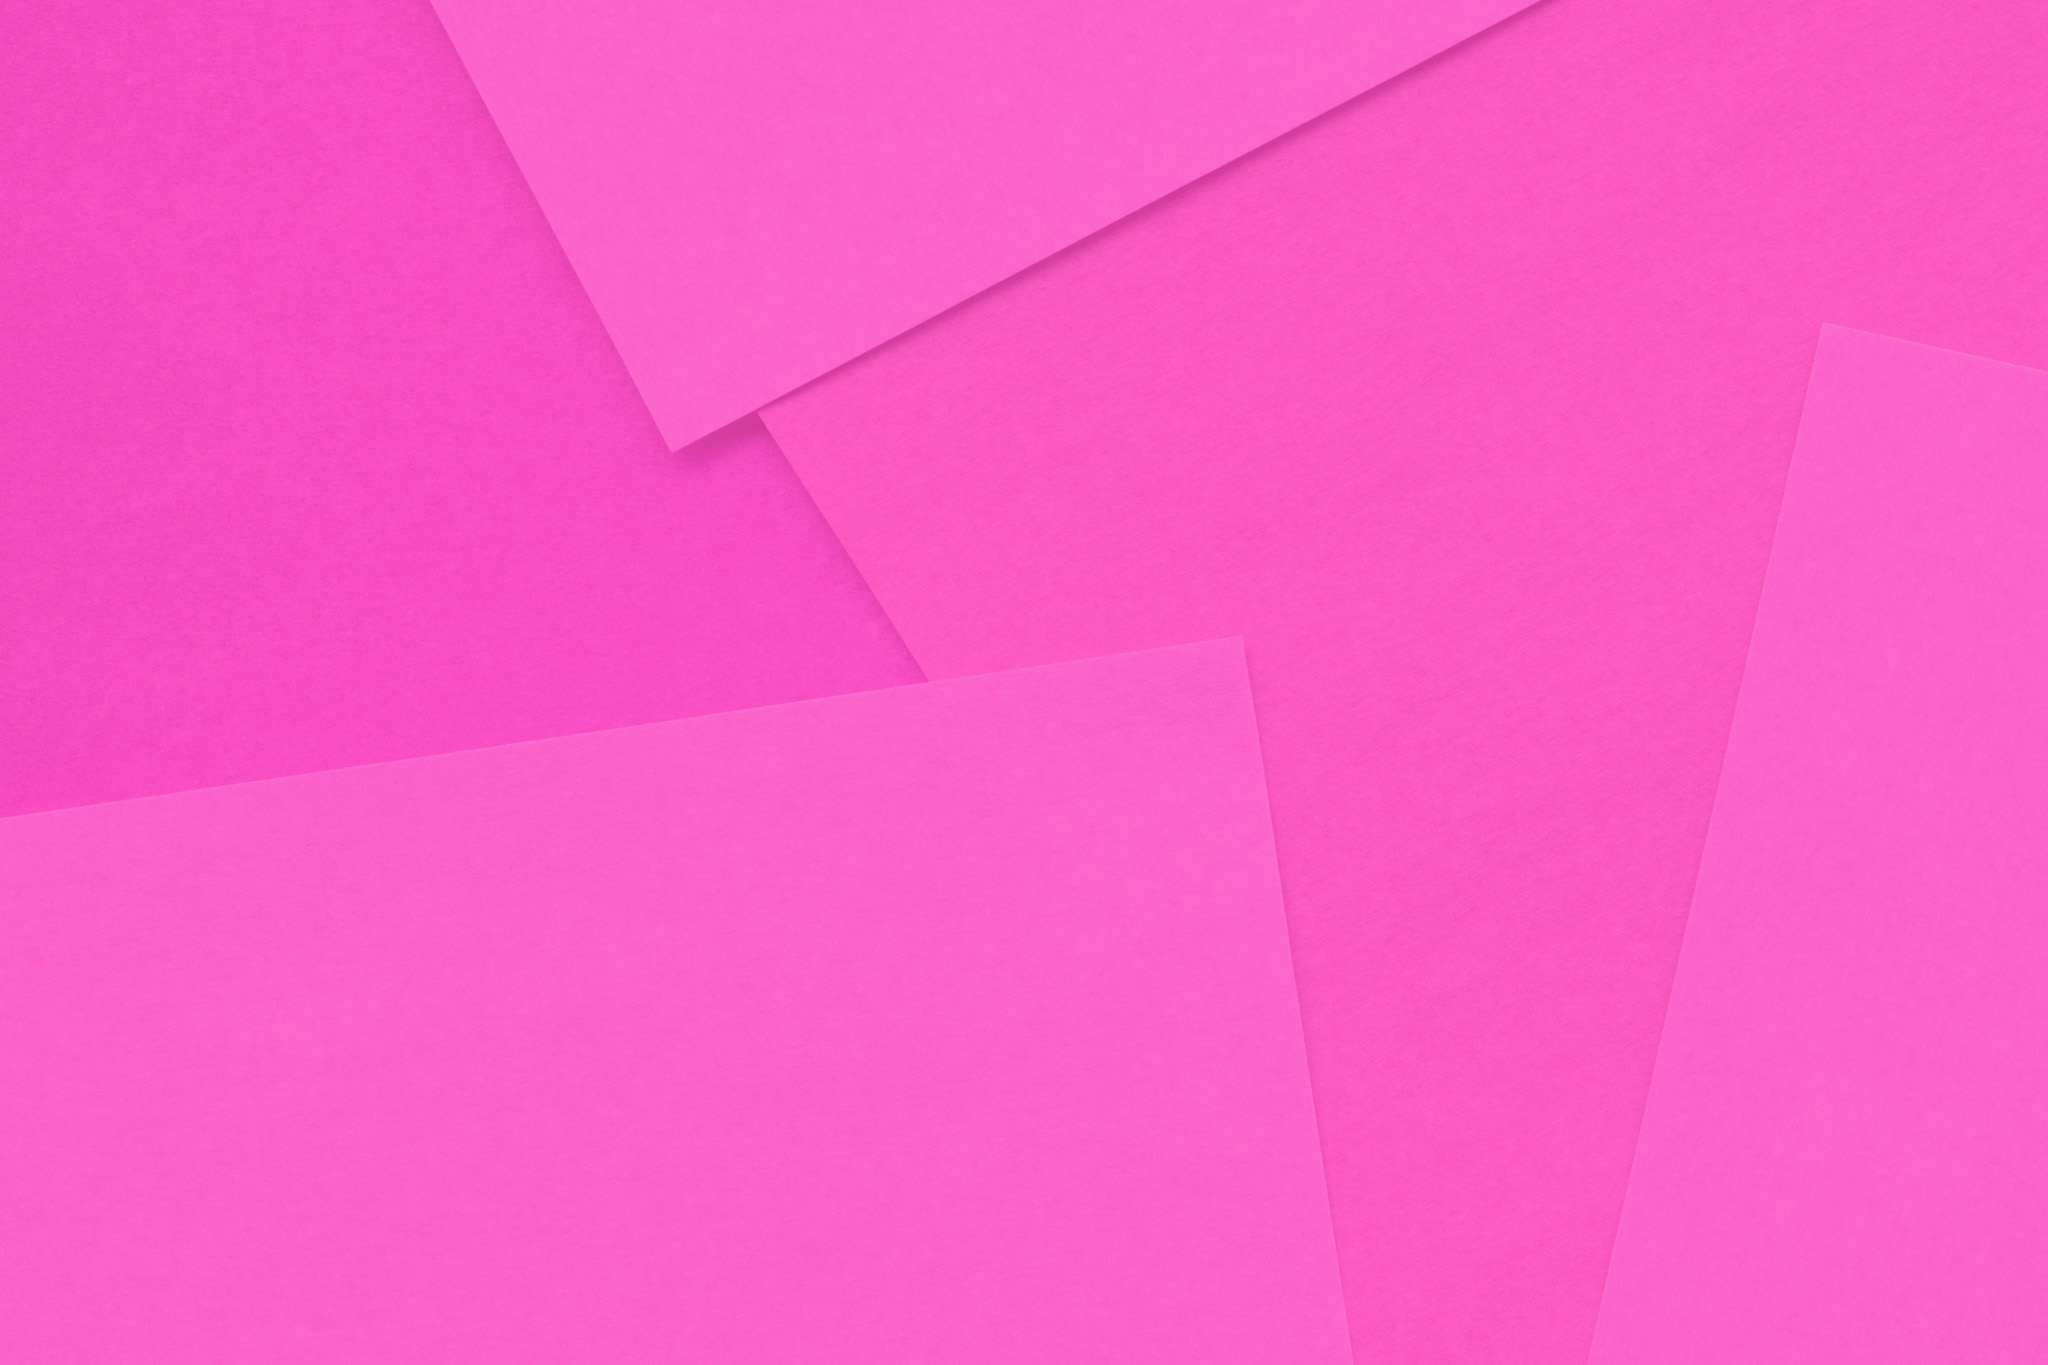 シンプルなピンクのフリー素材 の画像素材を無料ダウンロード 1 フリー素材 Beiz Images